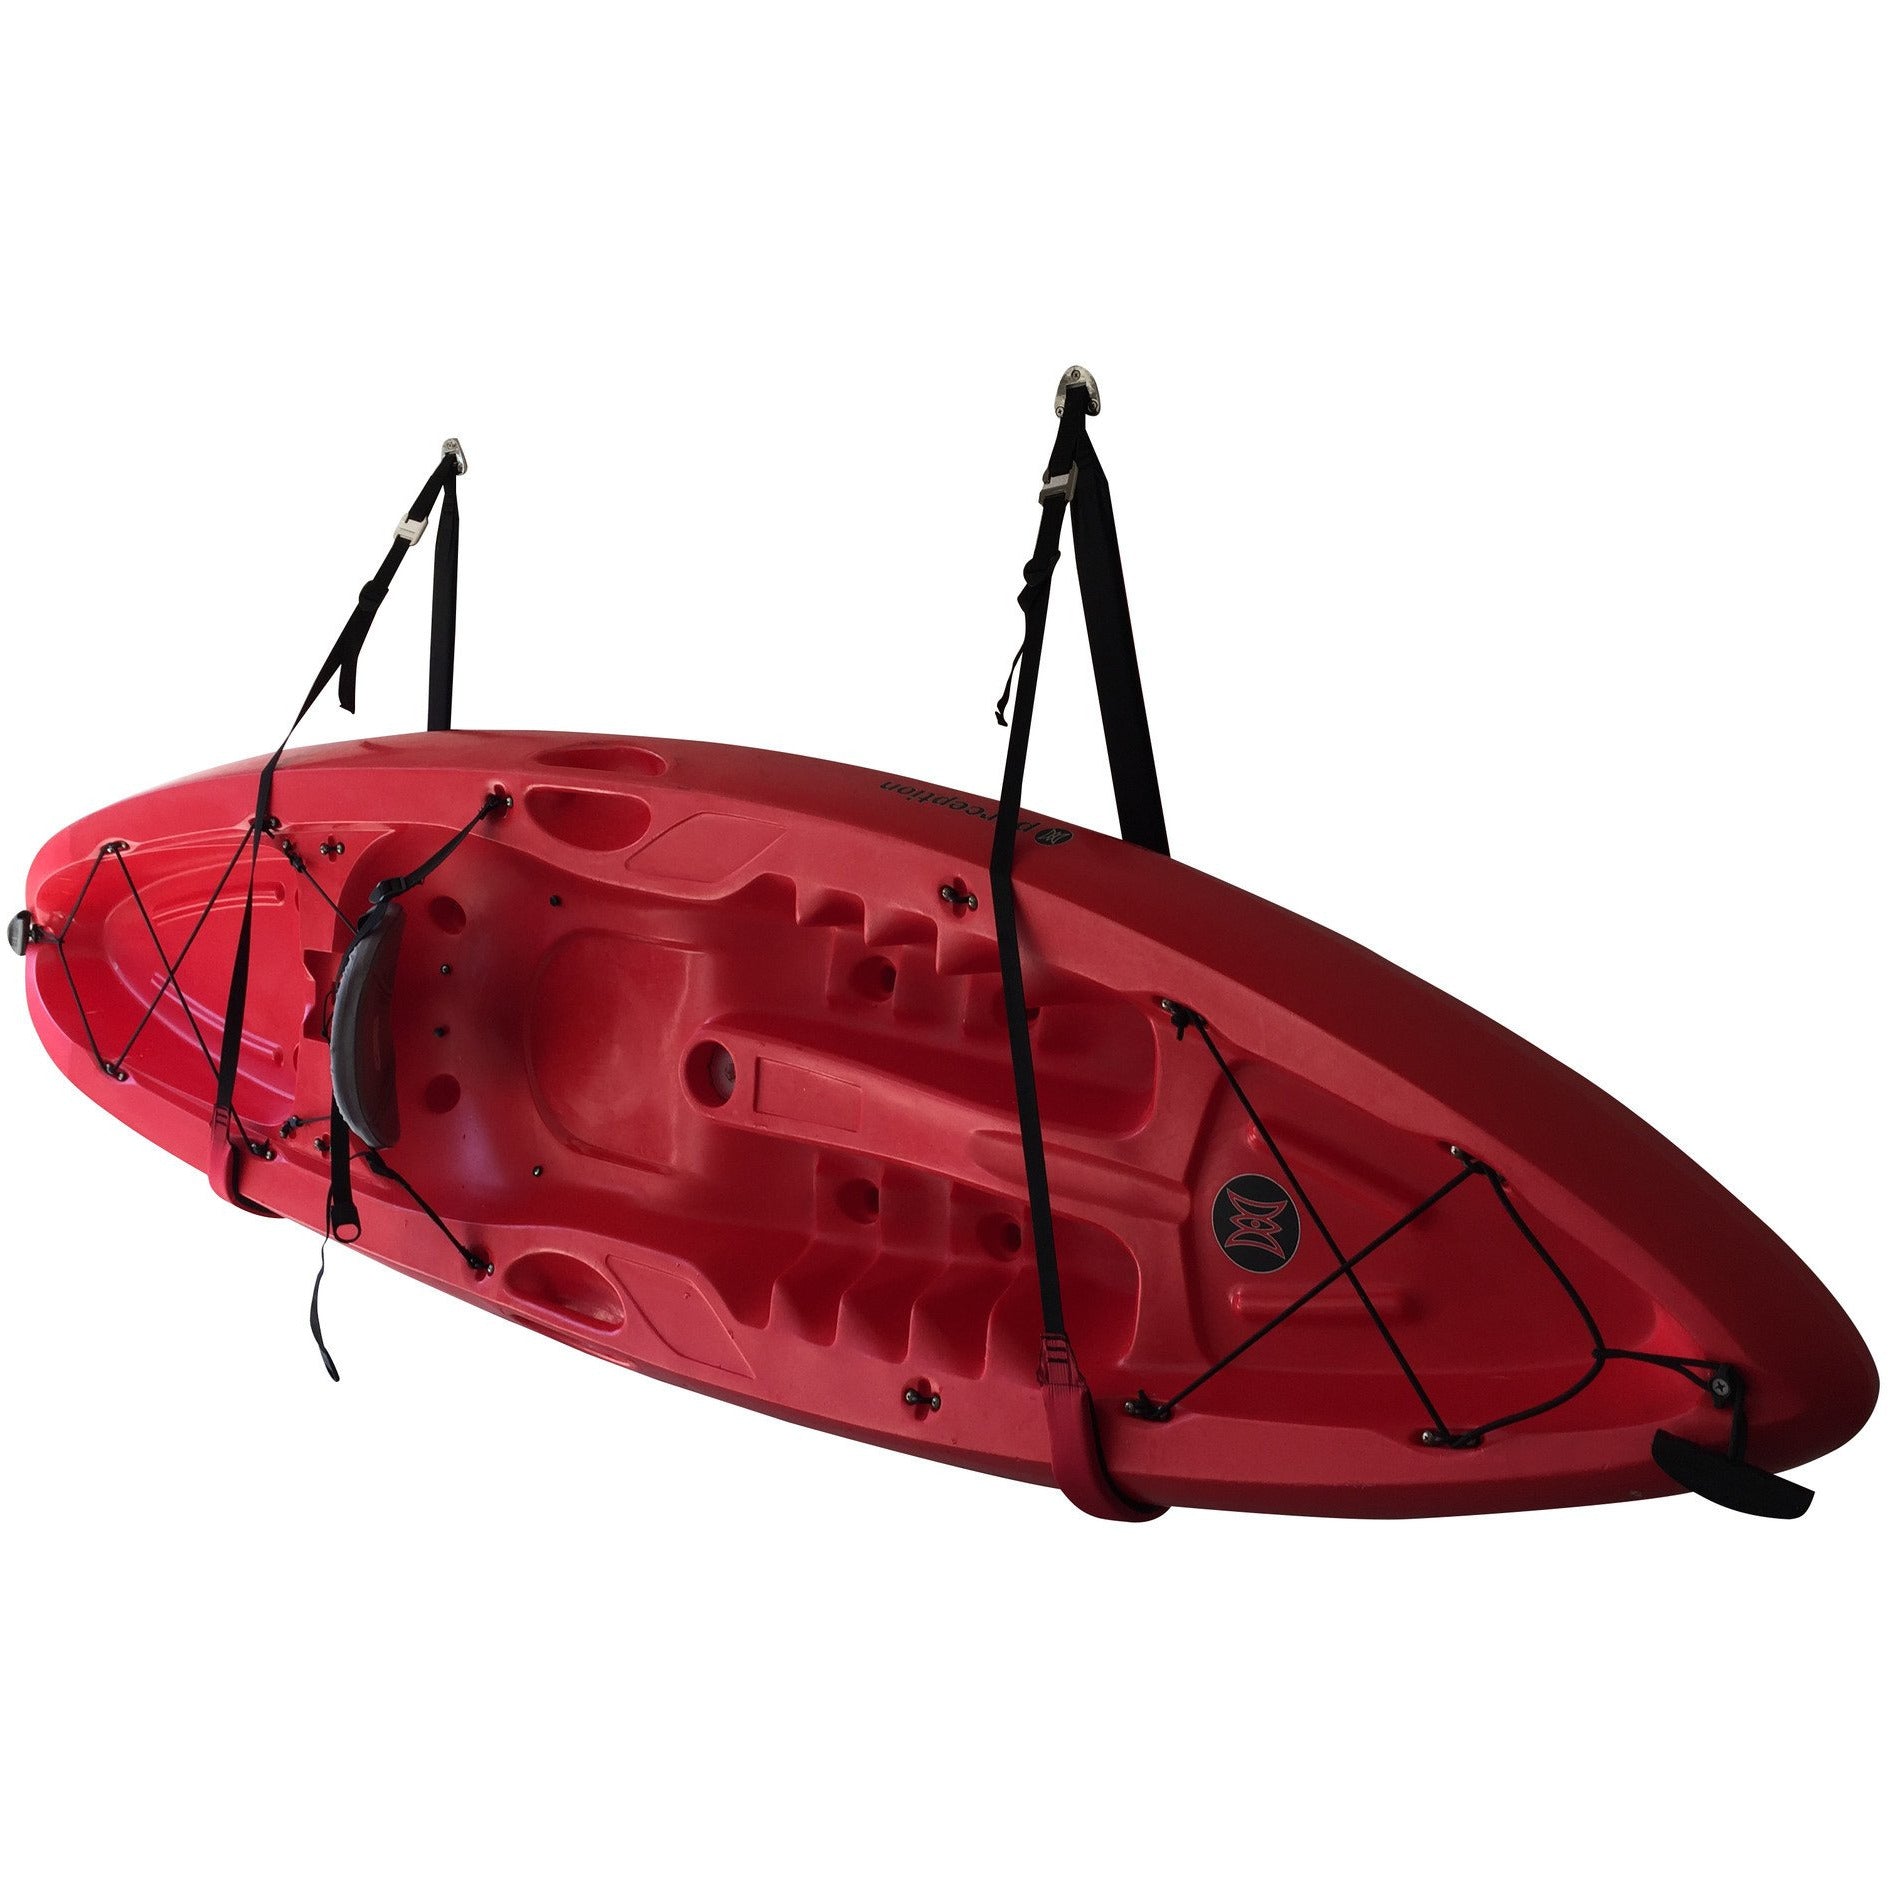 kayak storage wall mount indoor outdoor